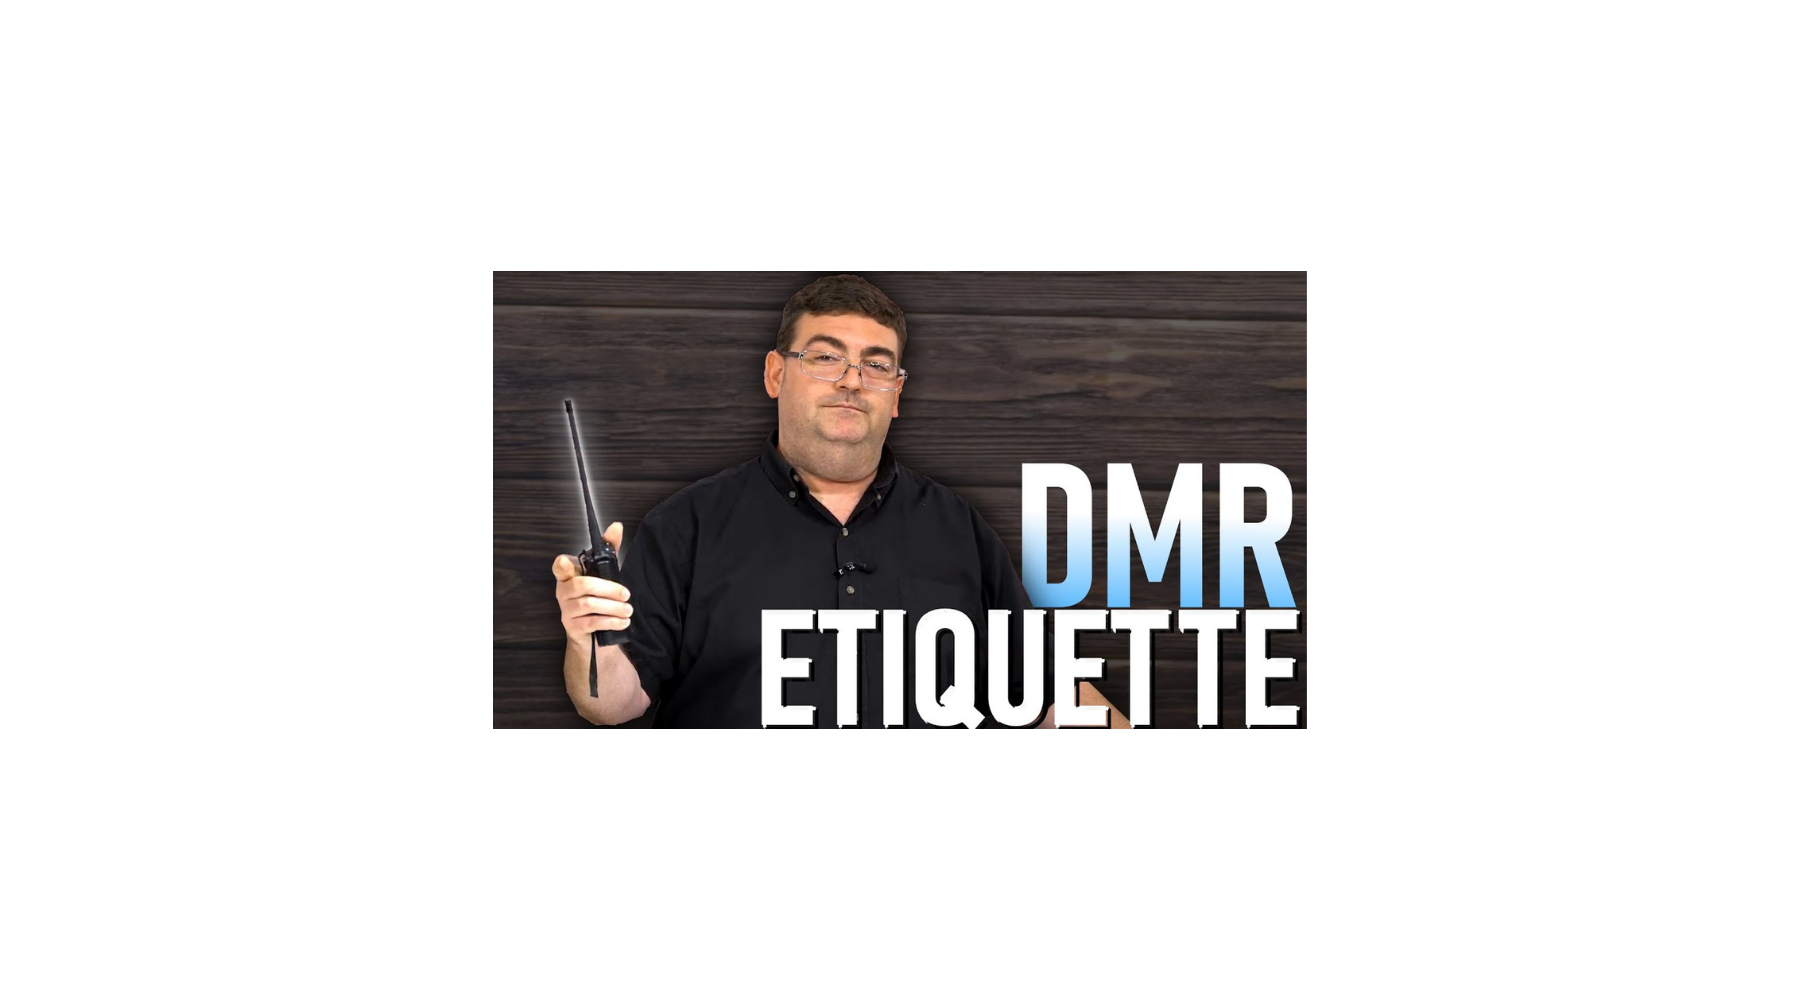 DMR Etiquette